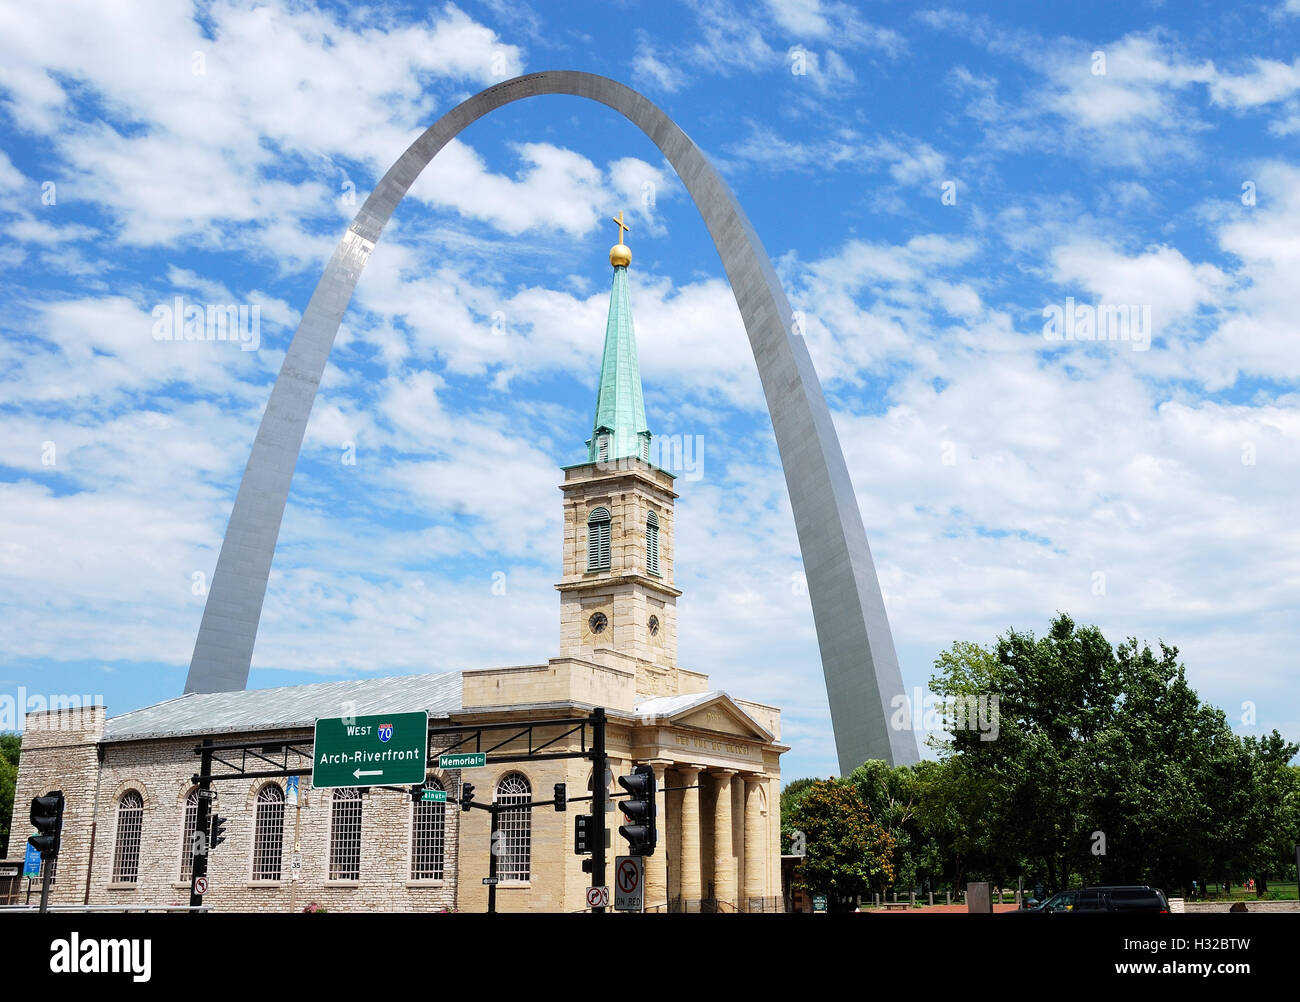 Saint Louis Arch et la vieille basilique cathédrale de St Louis, Missouri Banque D'Images